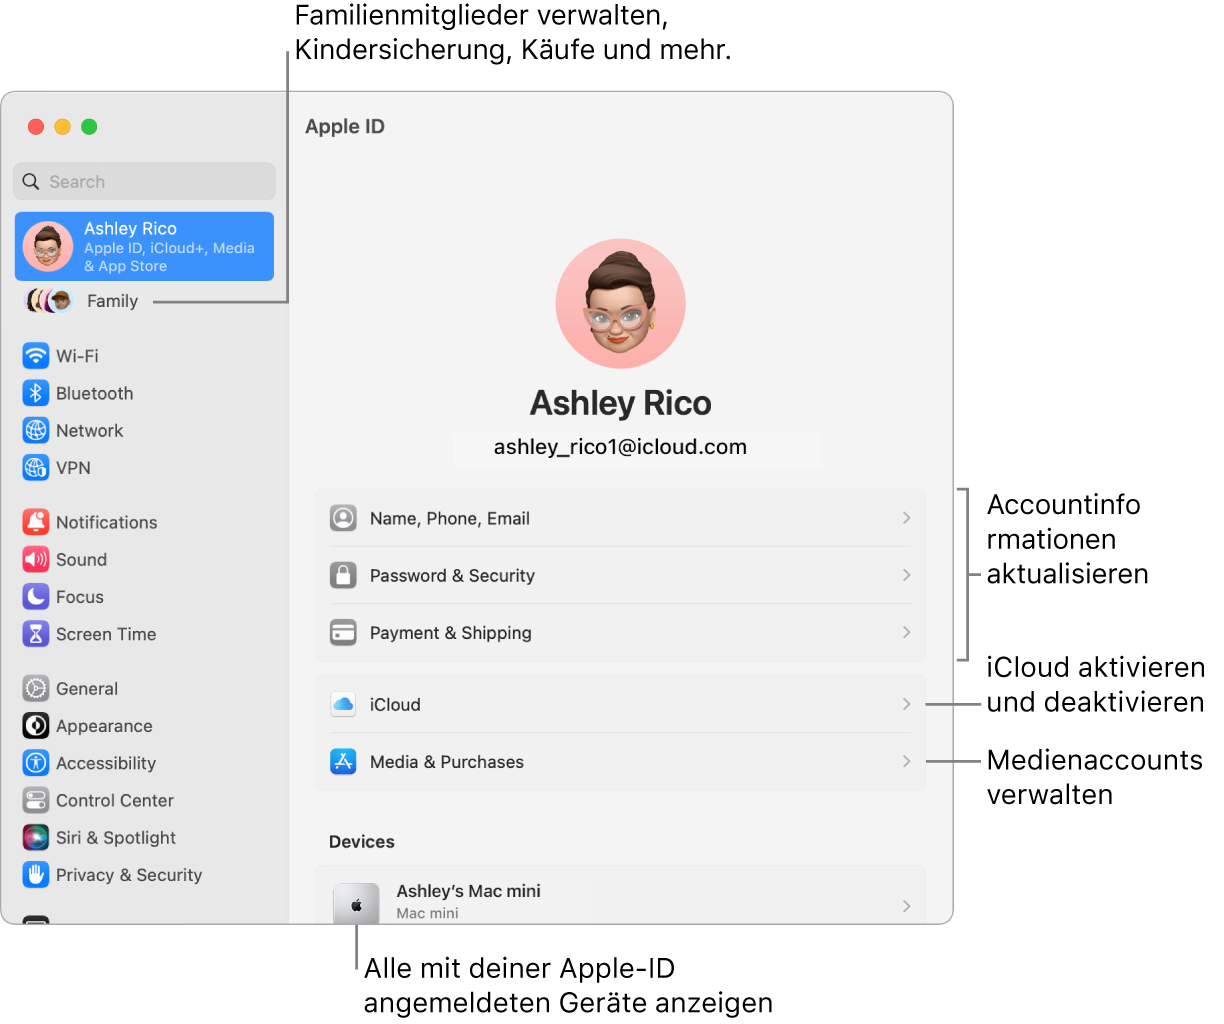 Apple-ID-Einstellungen in den Systemeinstellungen mit Beschriftungen zum Aktualisieren der Accountinformationen, Ein- bzw. Ausschalten von iCloud-Funktionen, Verwalten von Medienaccounts und für die Funktion „Familie“, um Familienmitglieder, Kindersicherung, Käufe und mehr zu verwalten.